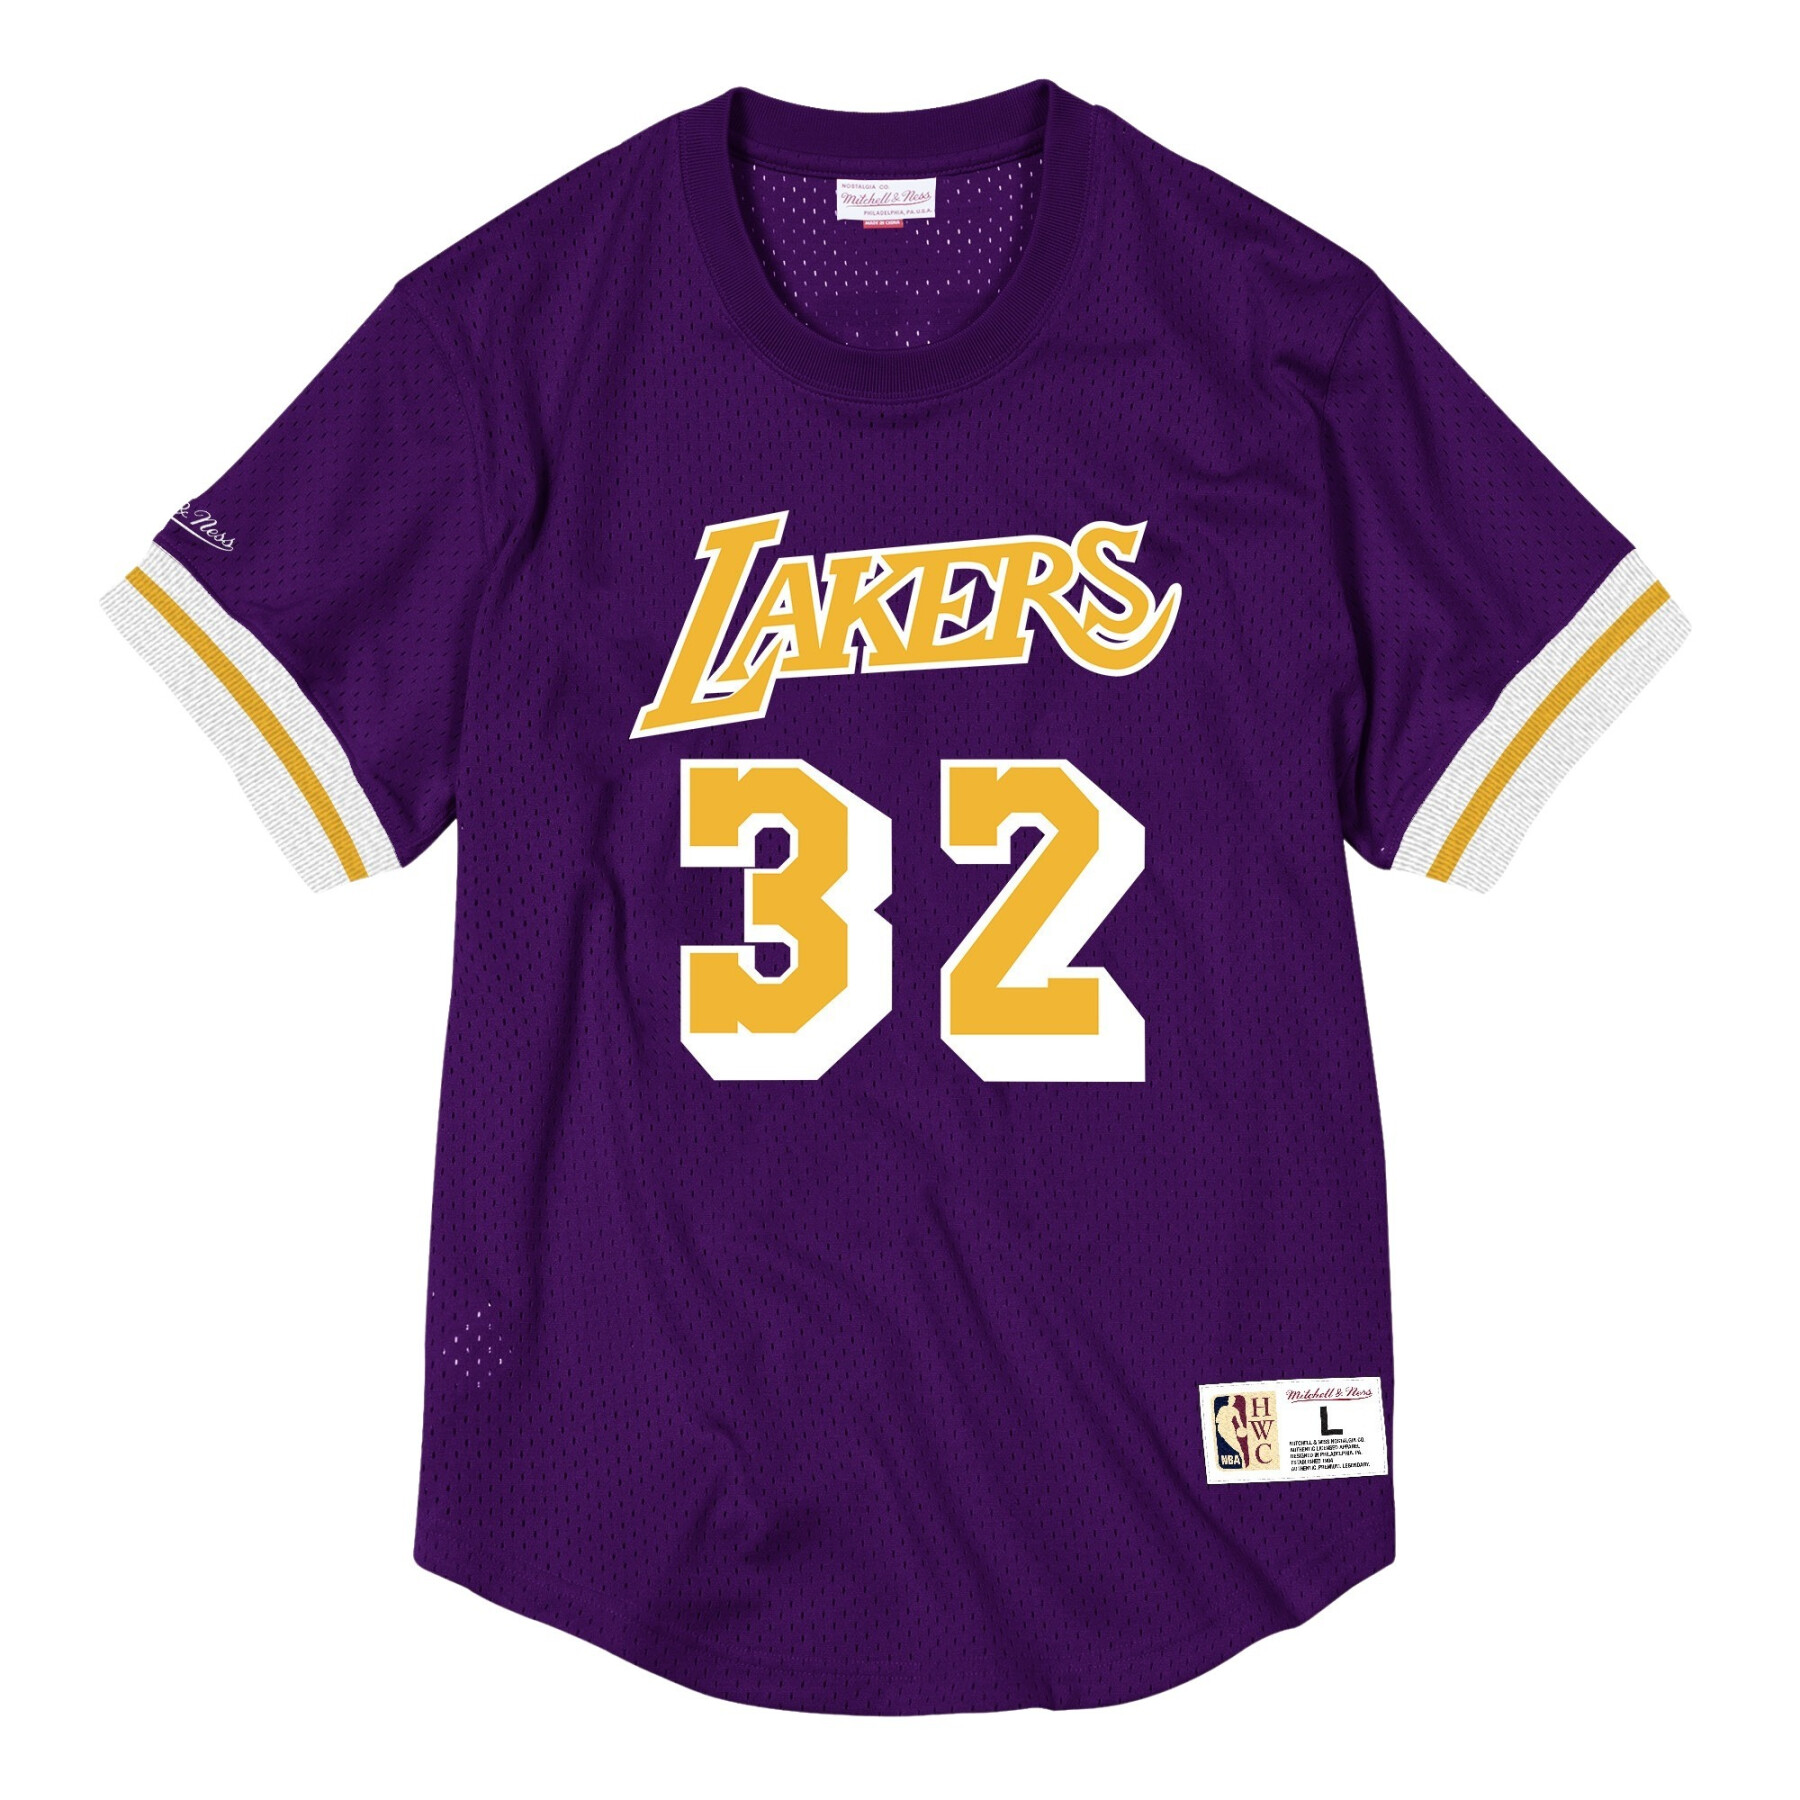 Camiseta de malla con nombre y número Los Angeles Lakers Magic Johnson